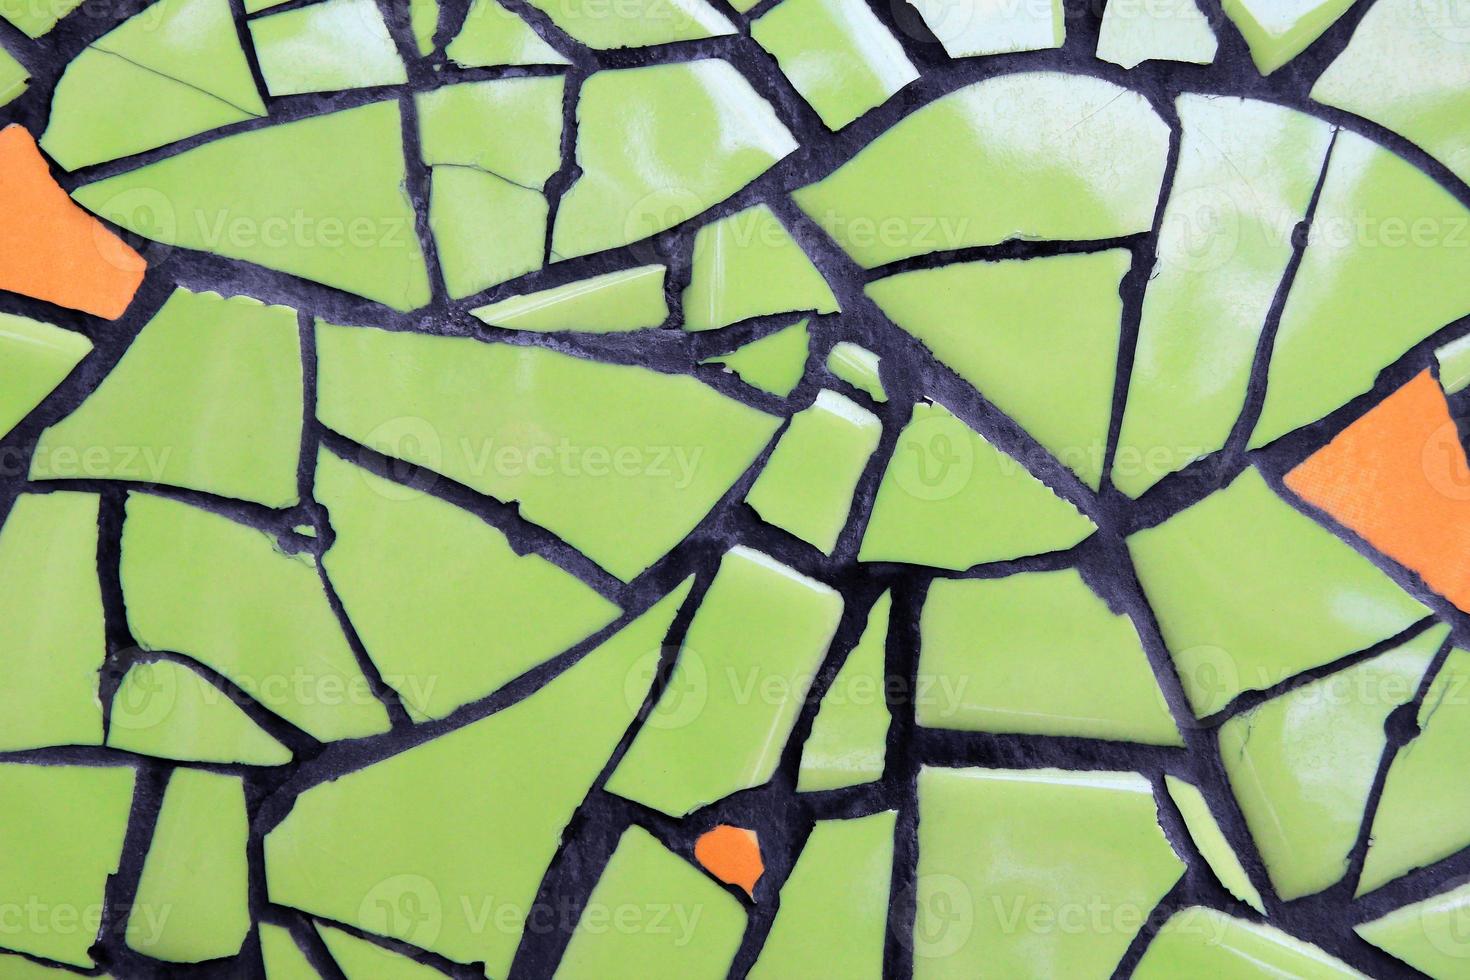 uma parede de peças de cerâmica de cor verde e laranja para segundo plano. foto